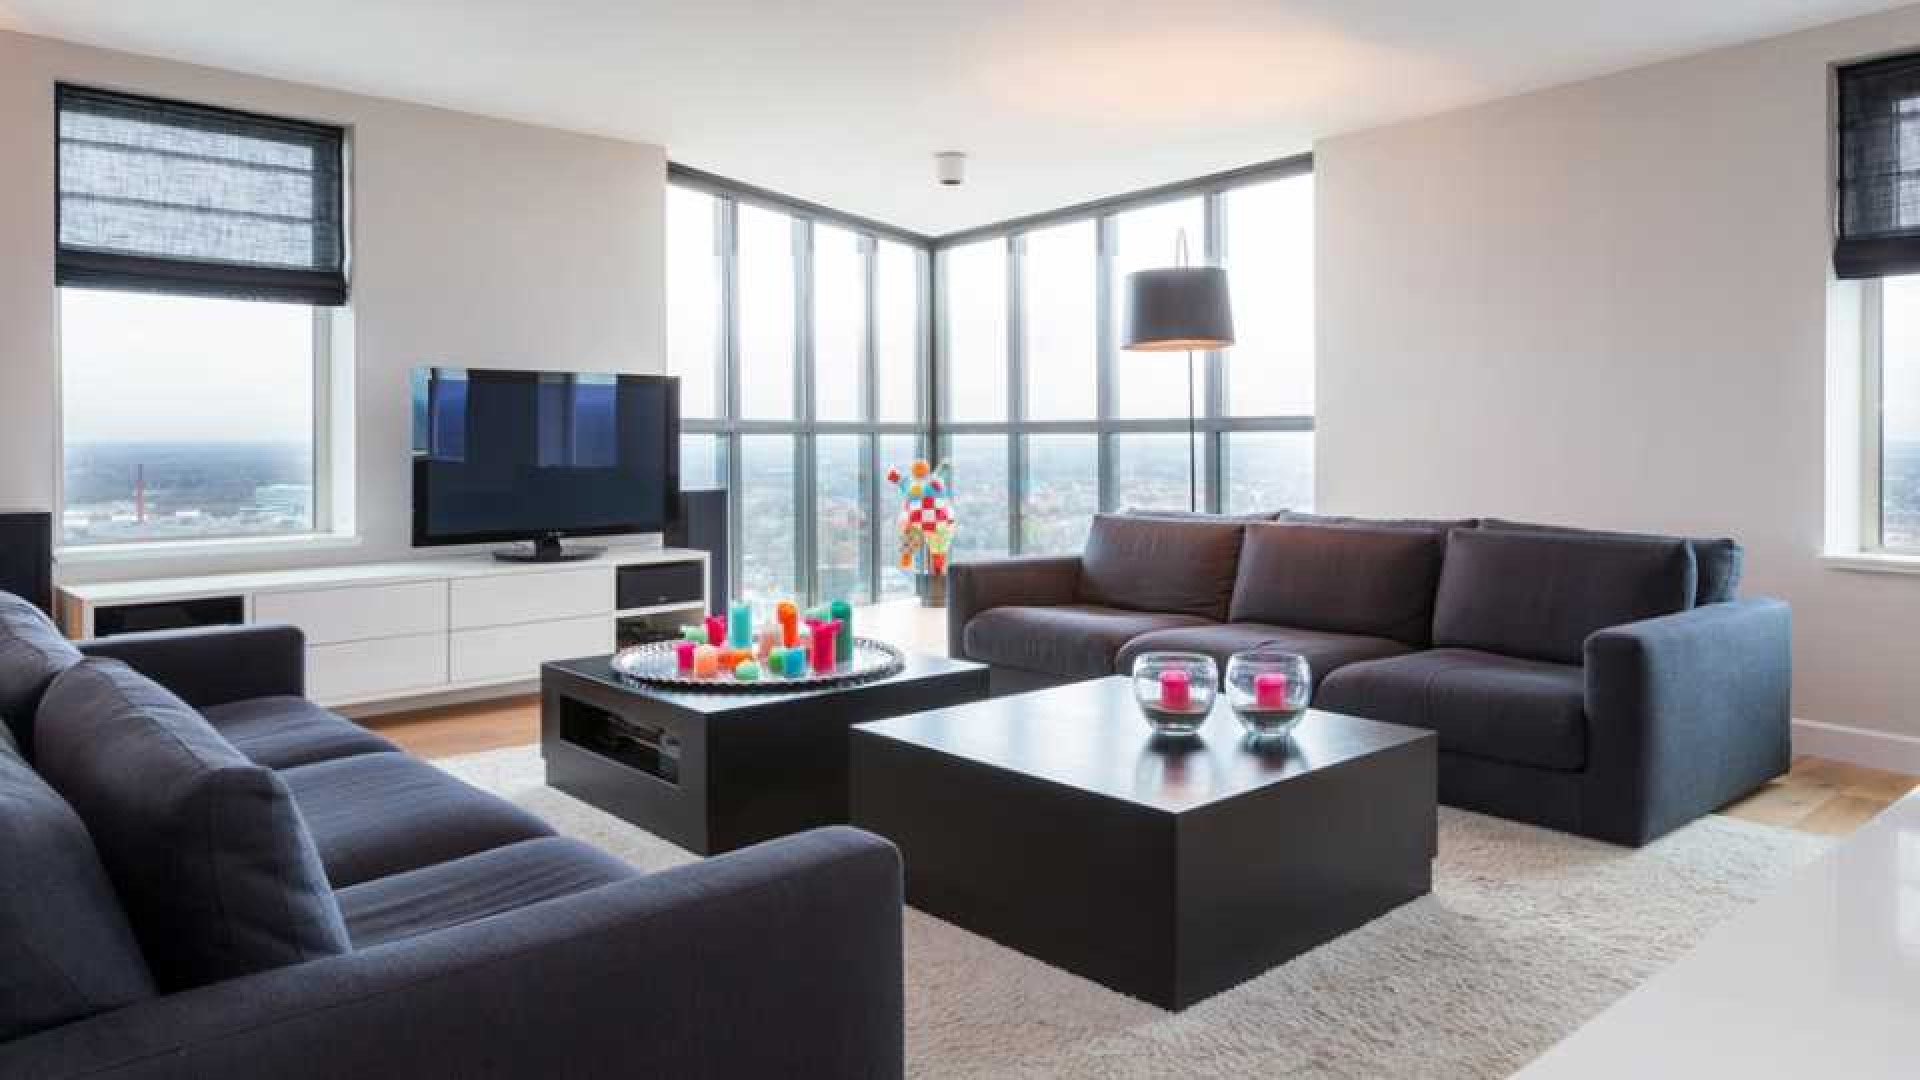 Amanda Krabbe en haar man Harrie Kolen zetten hun luxe penthouse in stille verkoop. Zie foto's